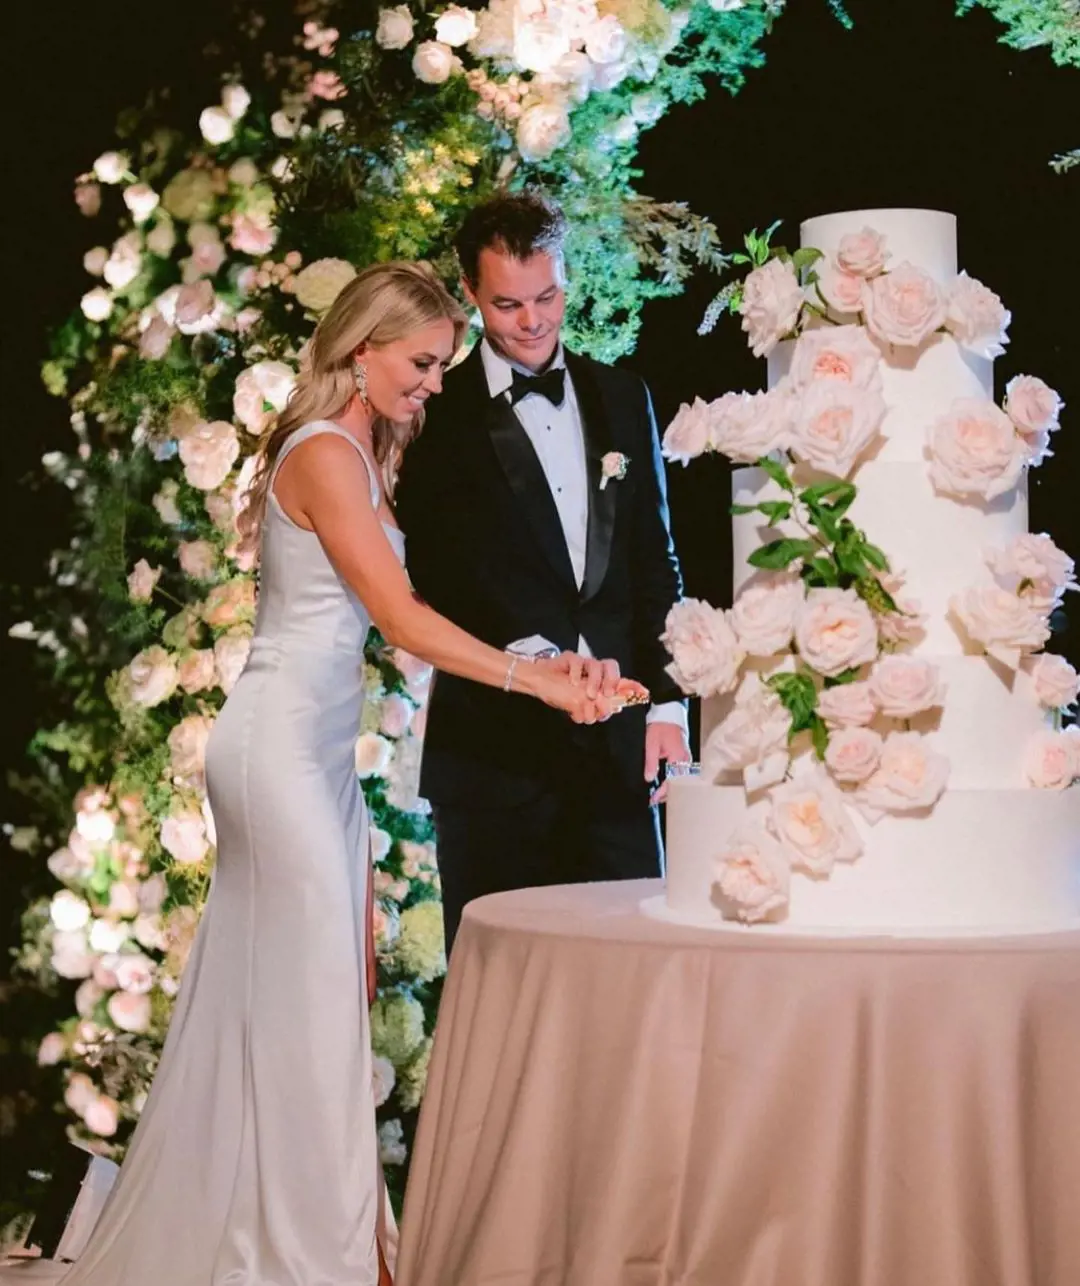 The couple cutting their wedding cake at Lake Como, Italy, on their wedding.